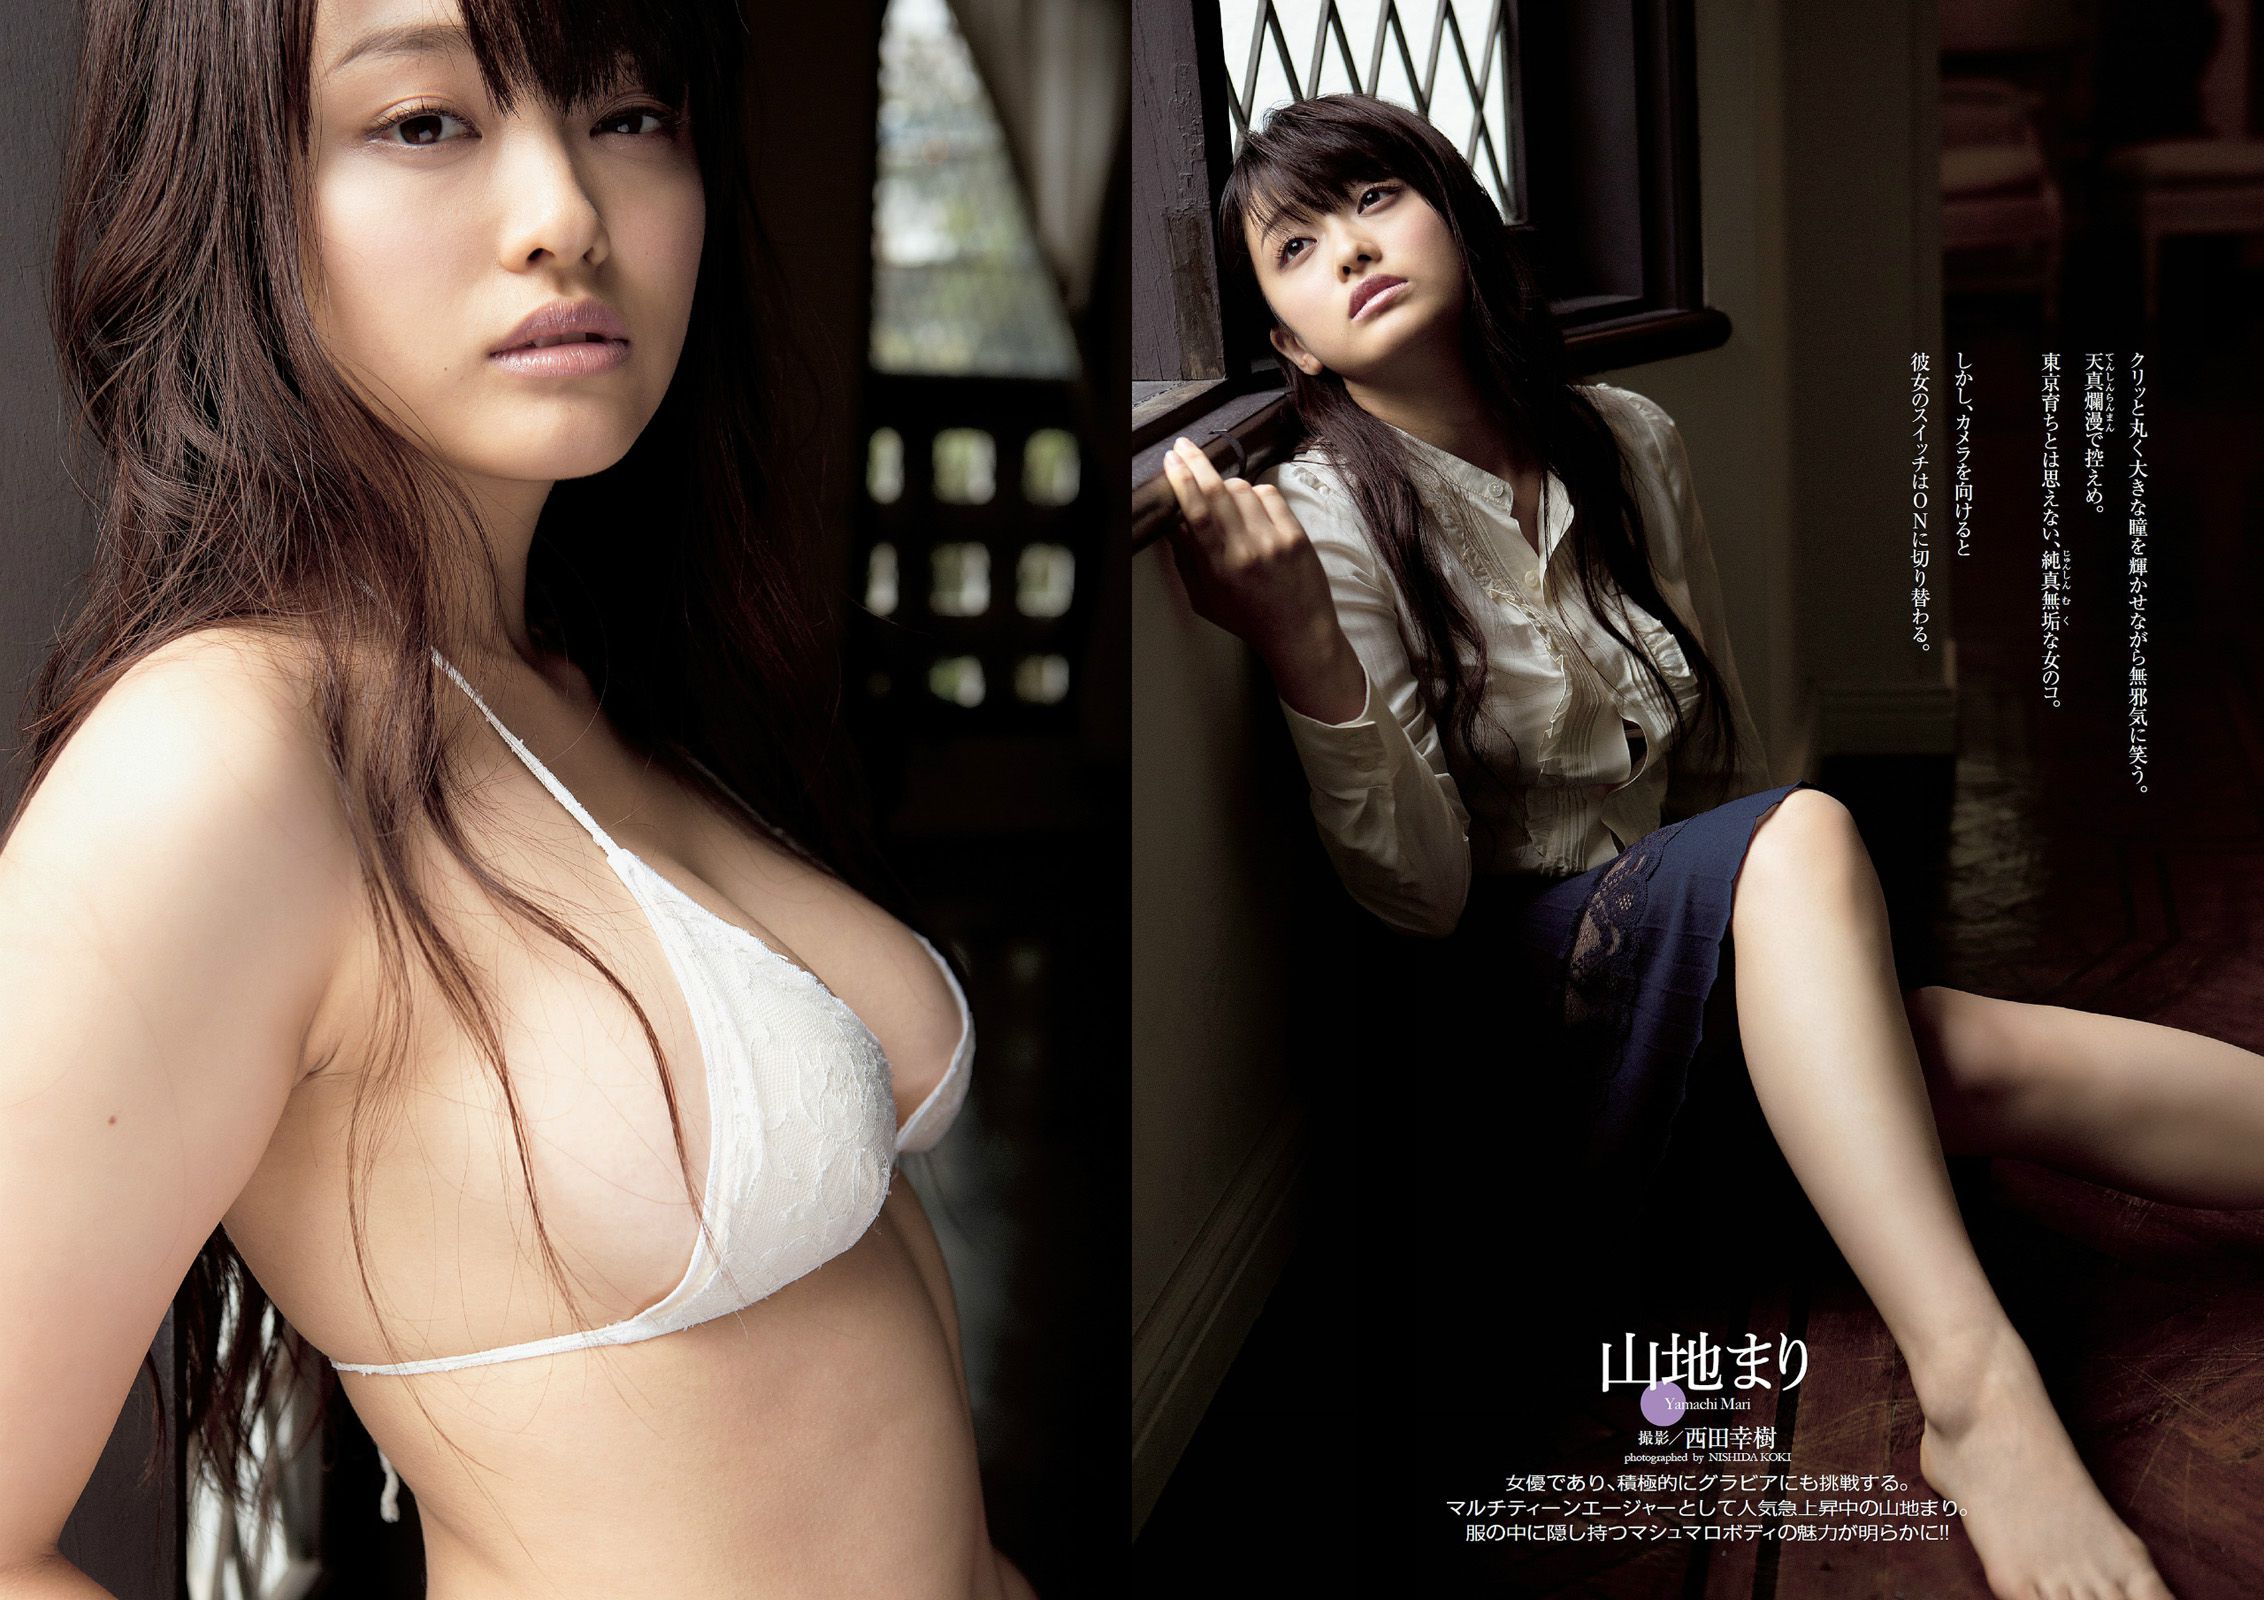 Yuko Oshima Mari Yamachi Mio Otani Rina Koike Mai Kamuro Aiko Eguchi [Wöchentlicher Playboy] 2014 Nr. 10 Foto Seite 1 No.e77f3d